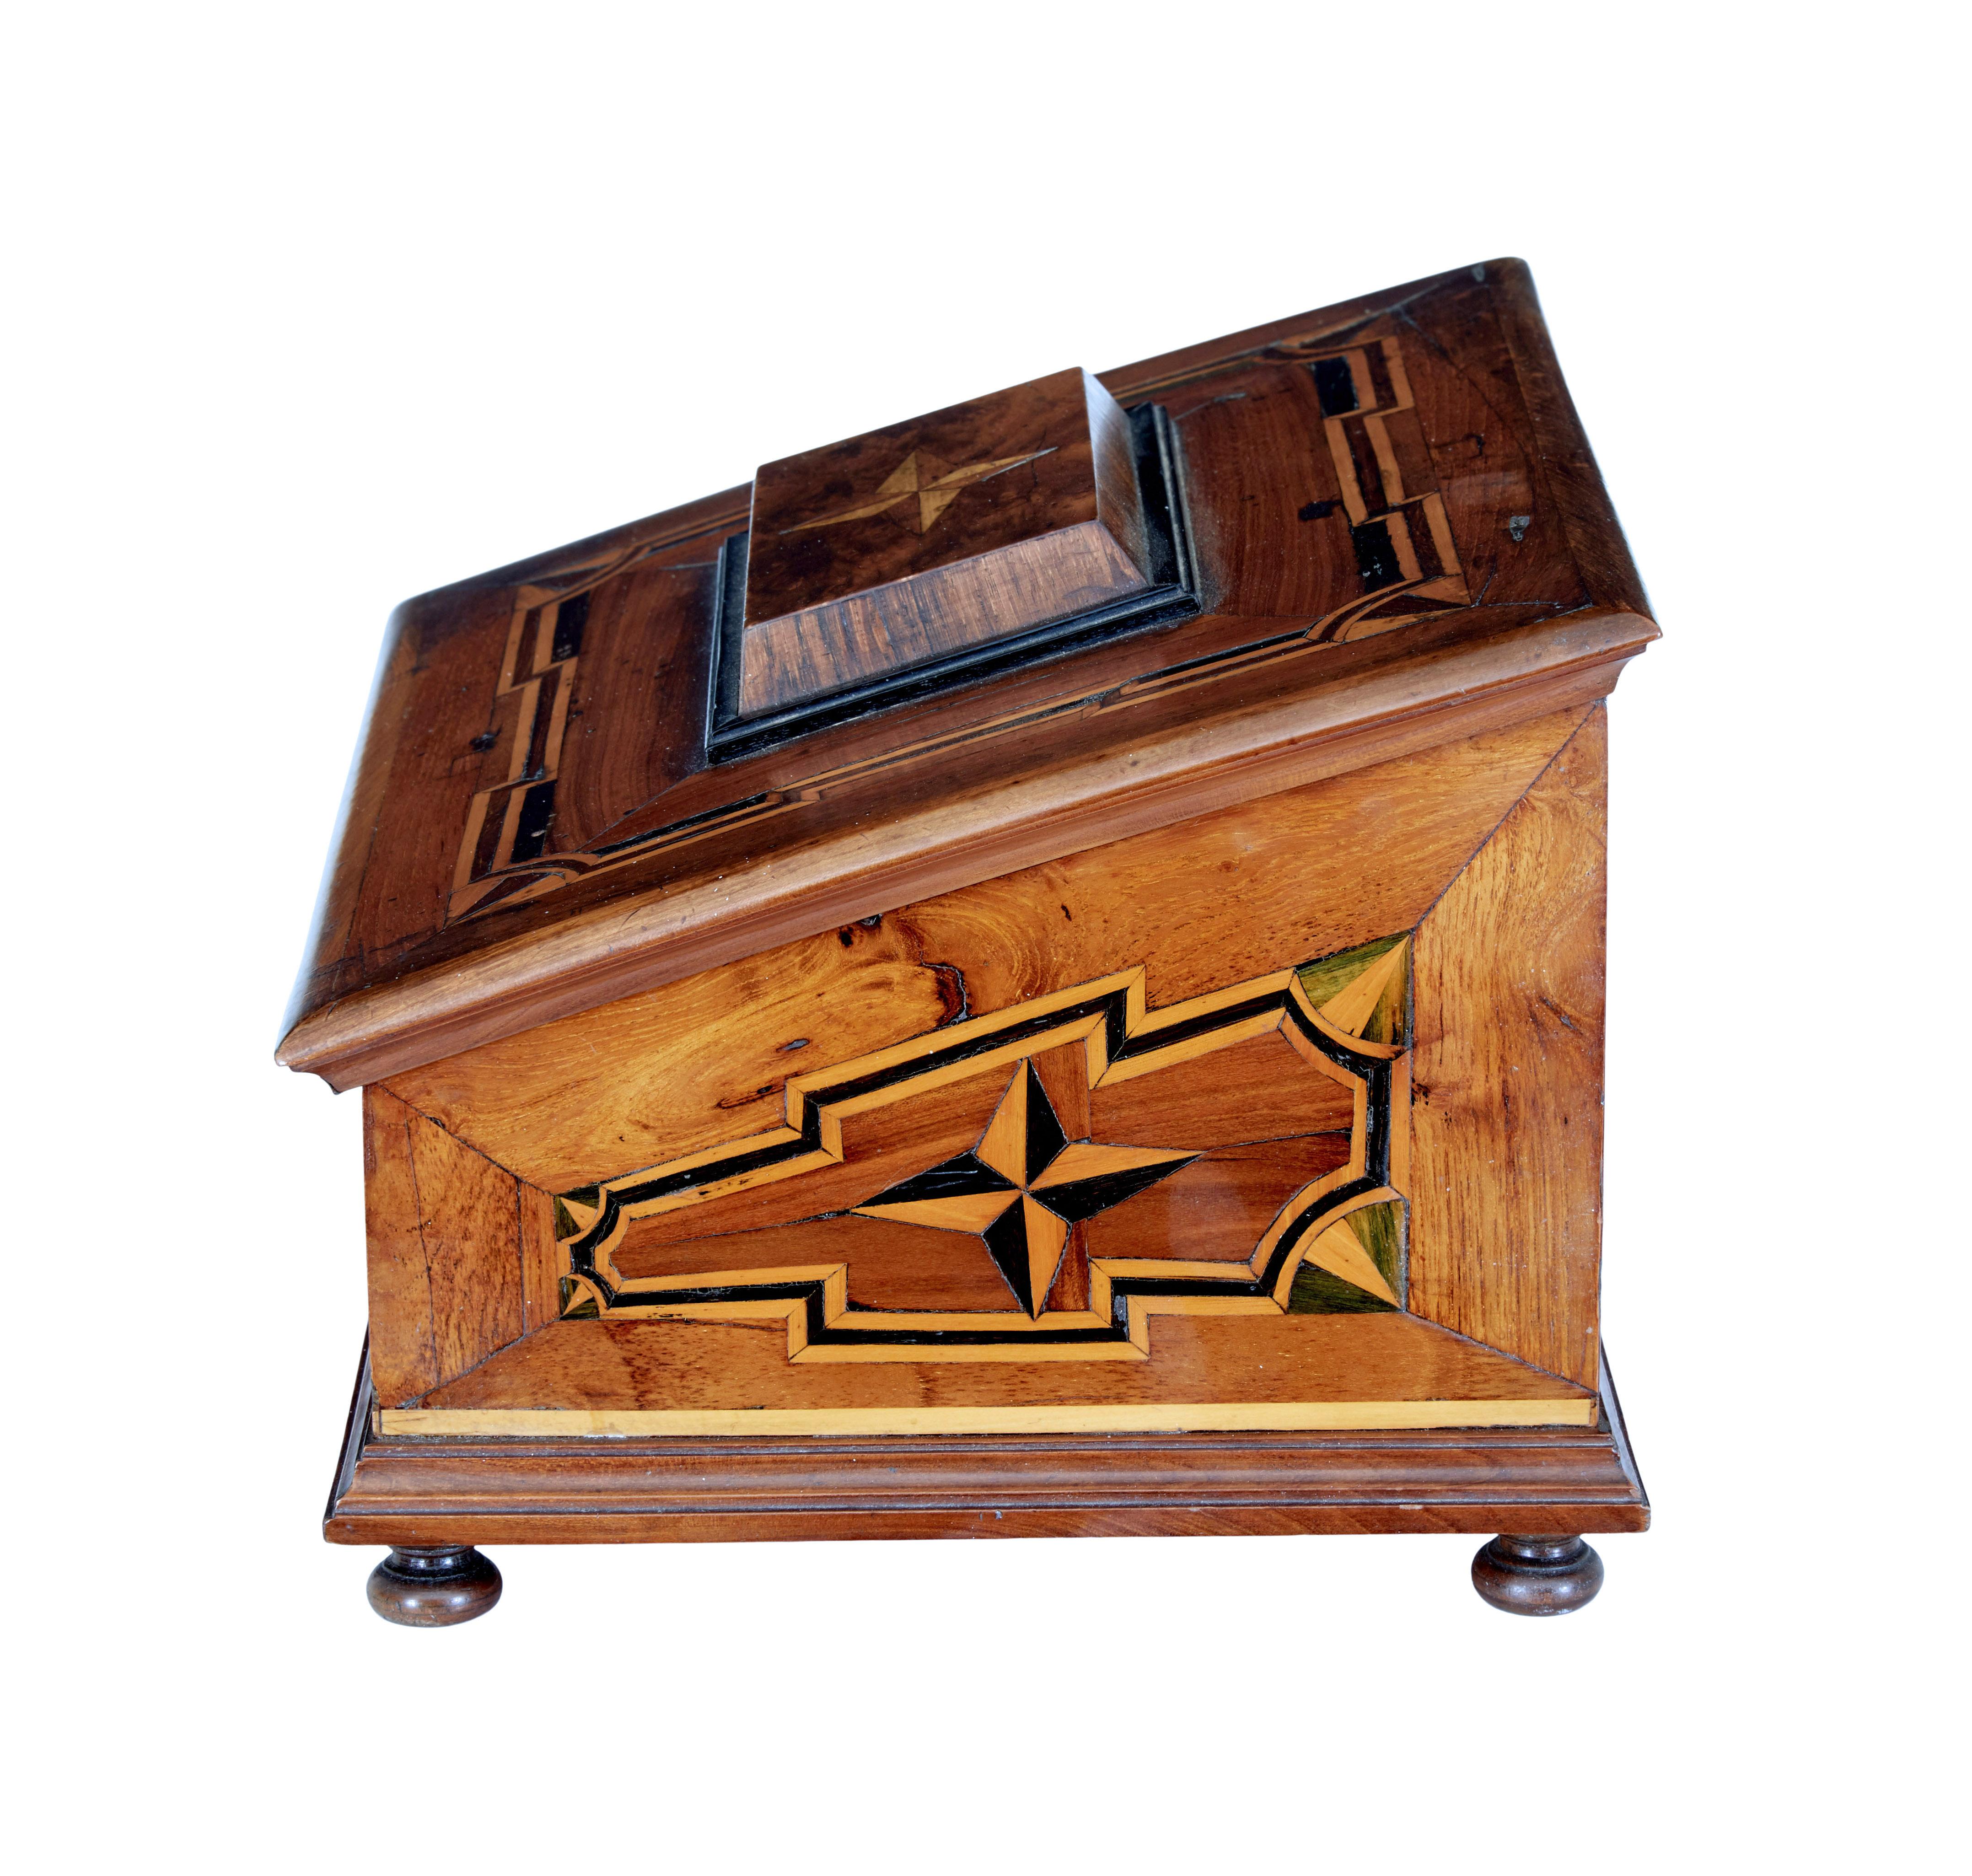 Boîte de bureau en marqueterie de bois fruitier du XIXe siècle, vers 1890.

Boîte de bureau de bonne qualité recouverte de marqueterie sur toutes les surfaces. Façade inclinée avec panneau décoratif en forme d'étoile.  Le couvercle s'ouvre pour